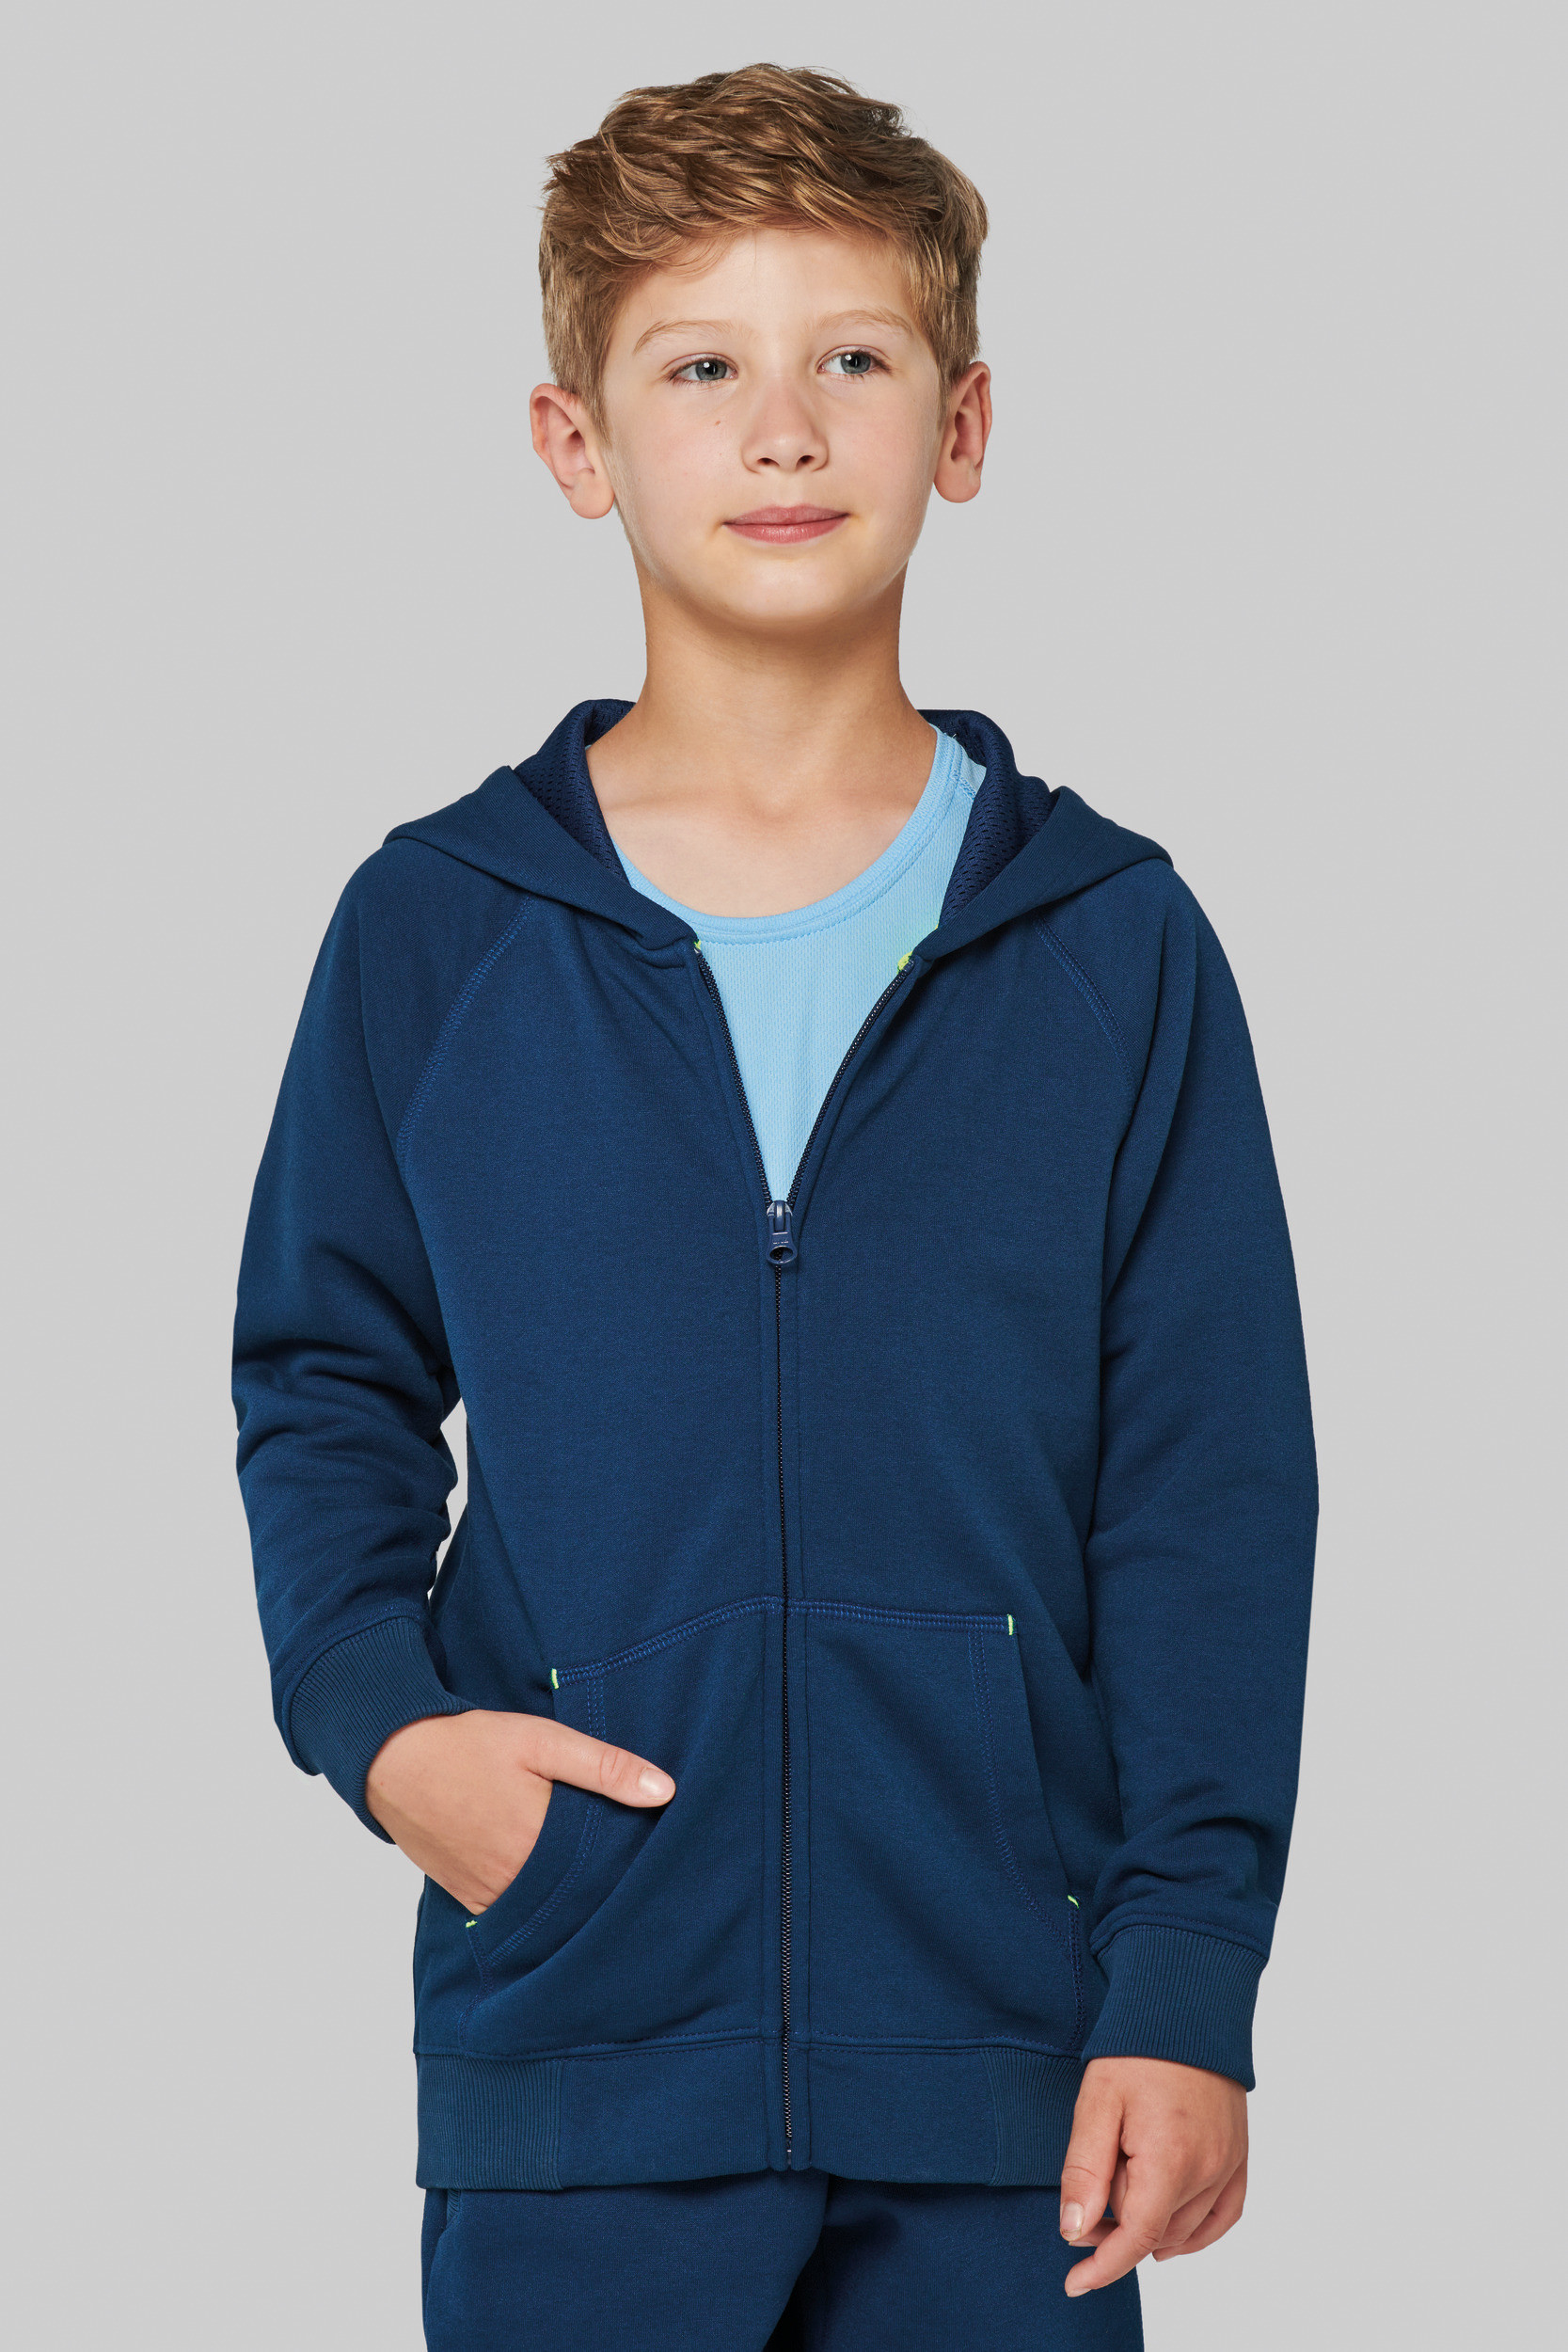 Gecomprimeerd progressief zonne Sweater PROACT Kinder fleece hoodie met rits PA386 Bedrukken & Borduren